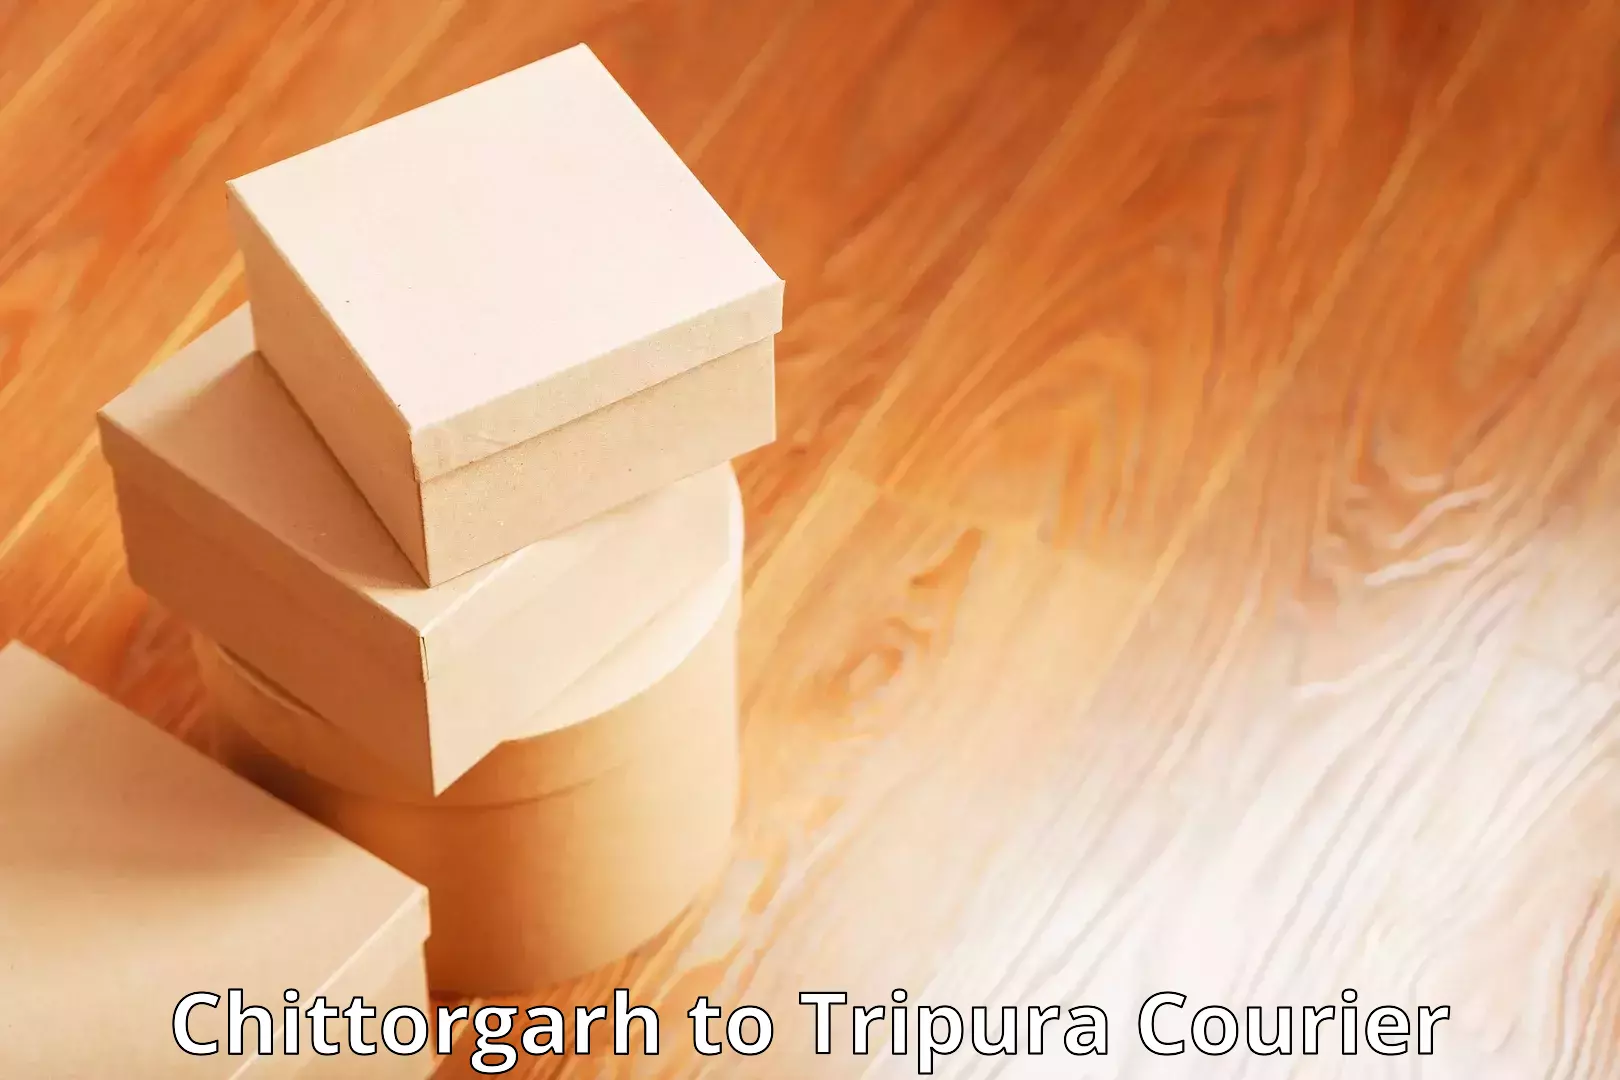 Efficient parcel transport Chittorgarh to Udaipur Tripura